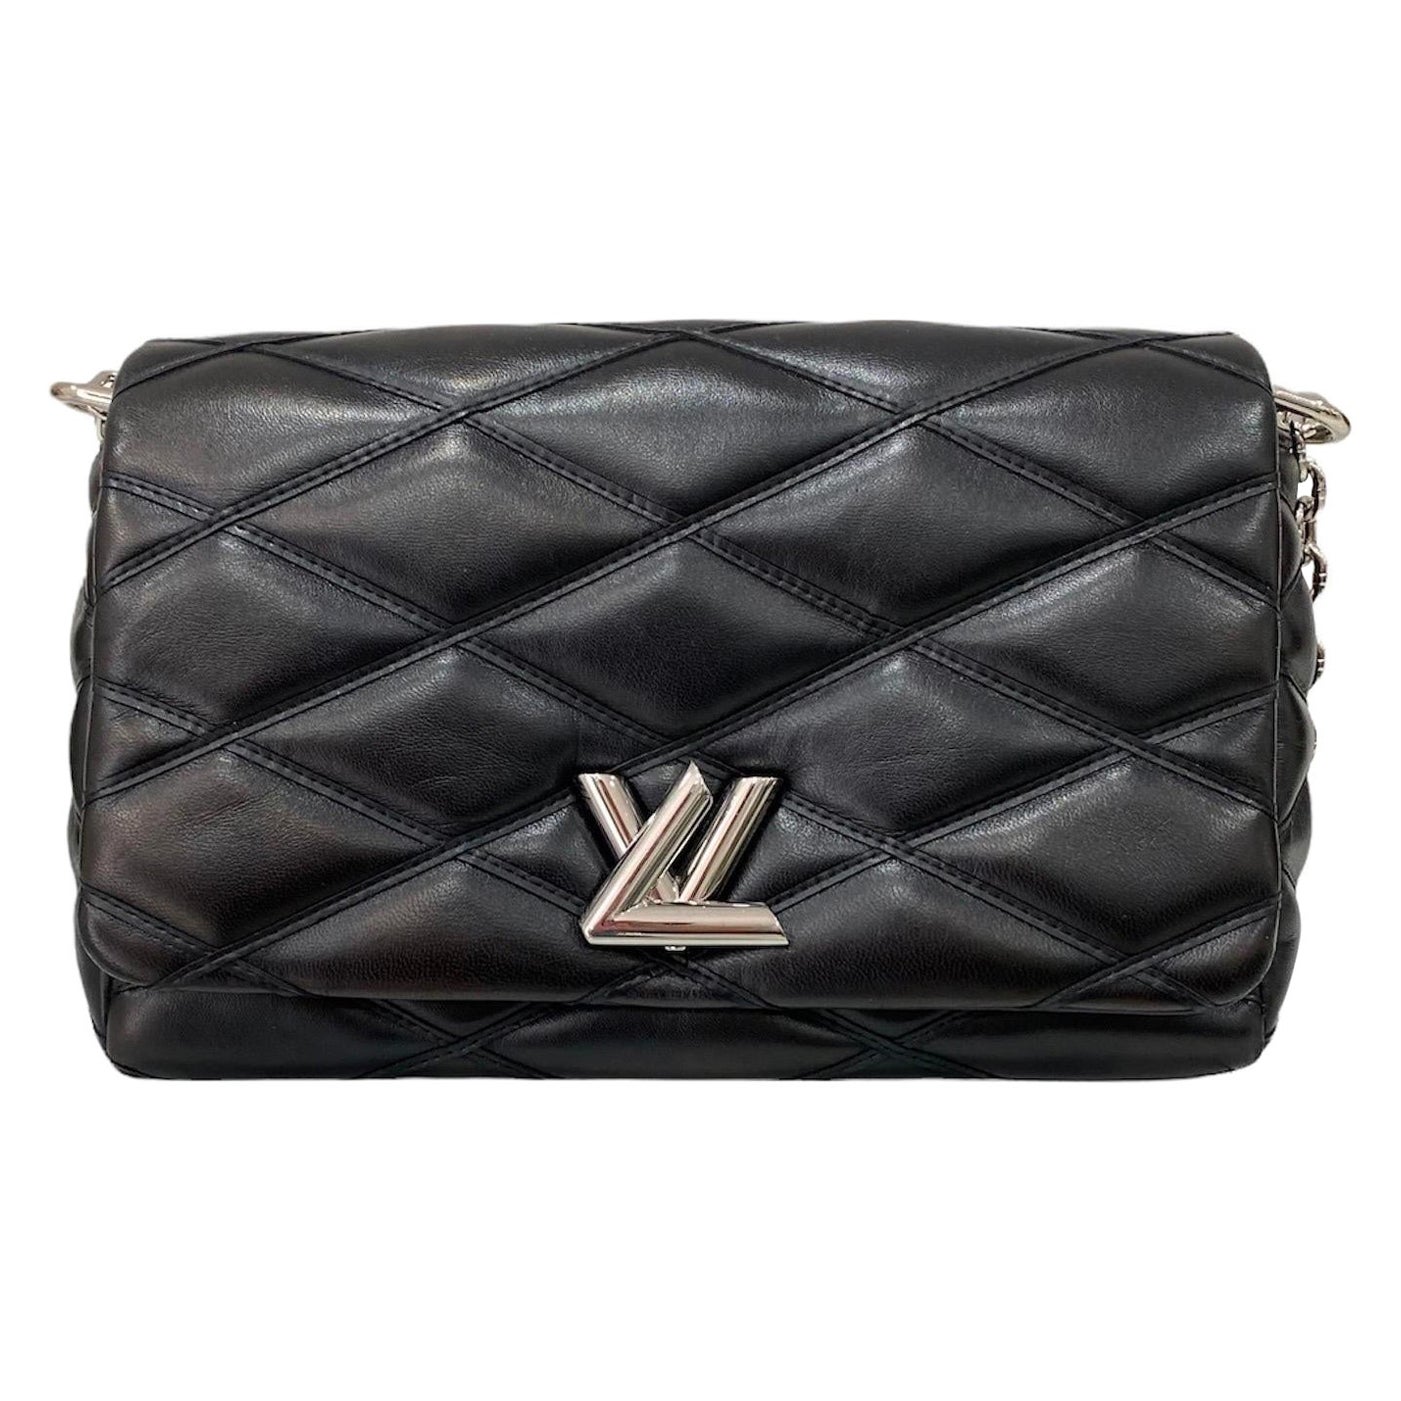 LOUIS VUITTON Handbag Authentic GO-14 MINI Chain Shoulder Bag Red